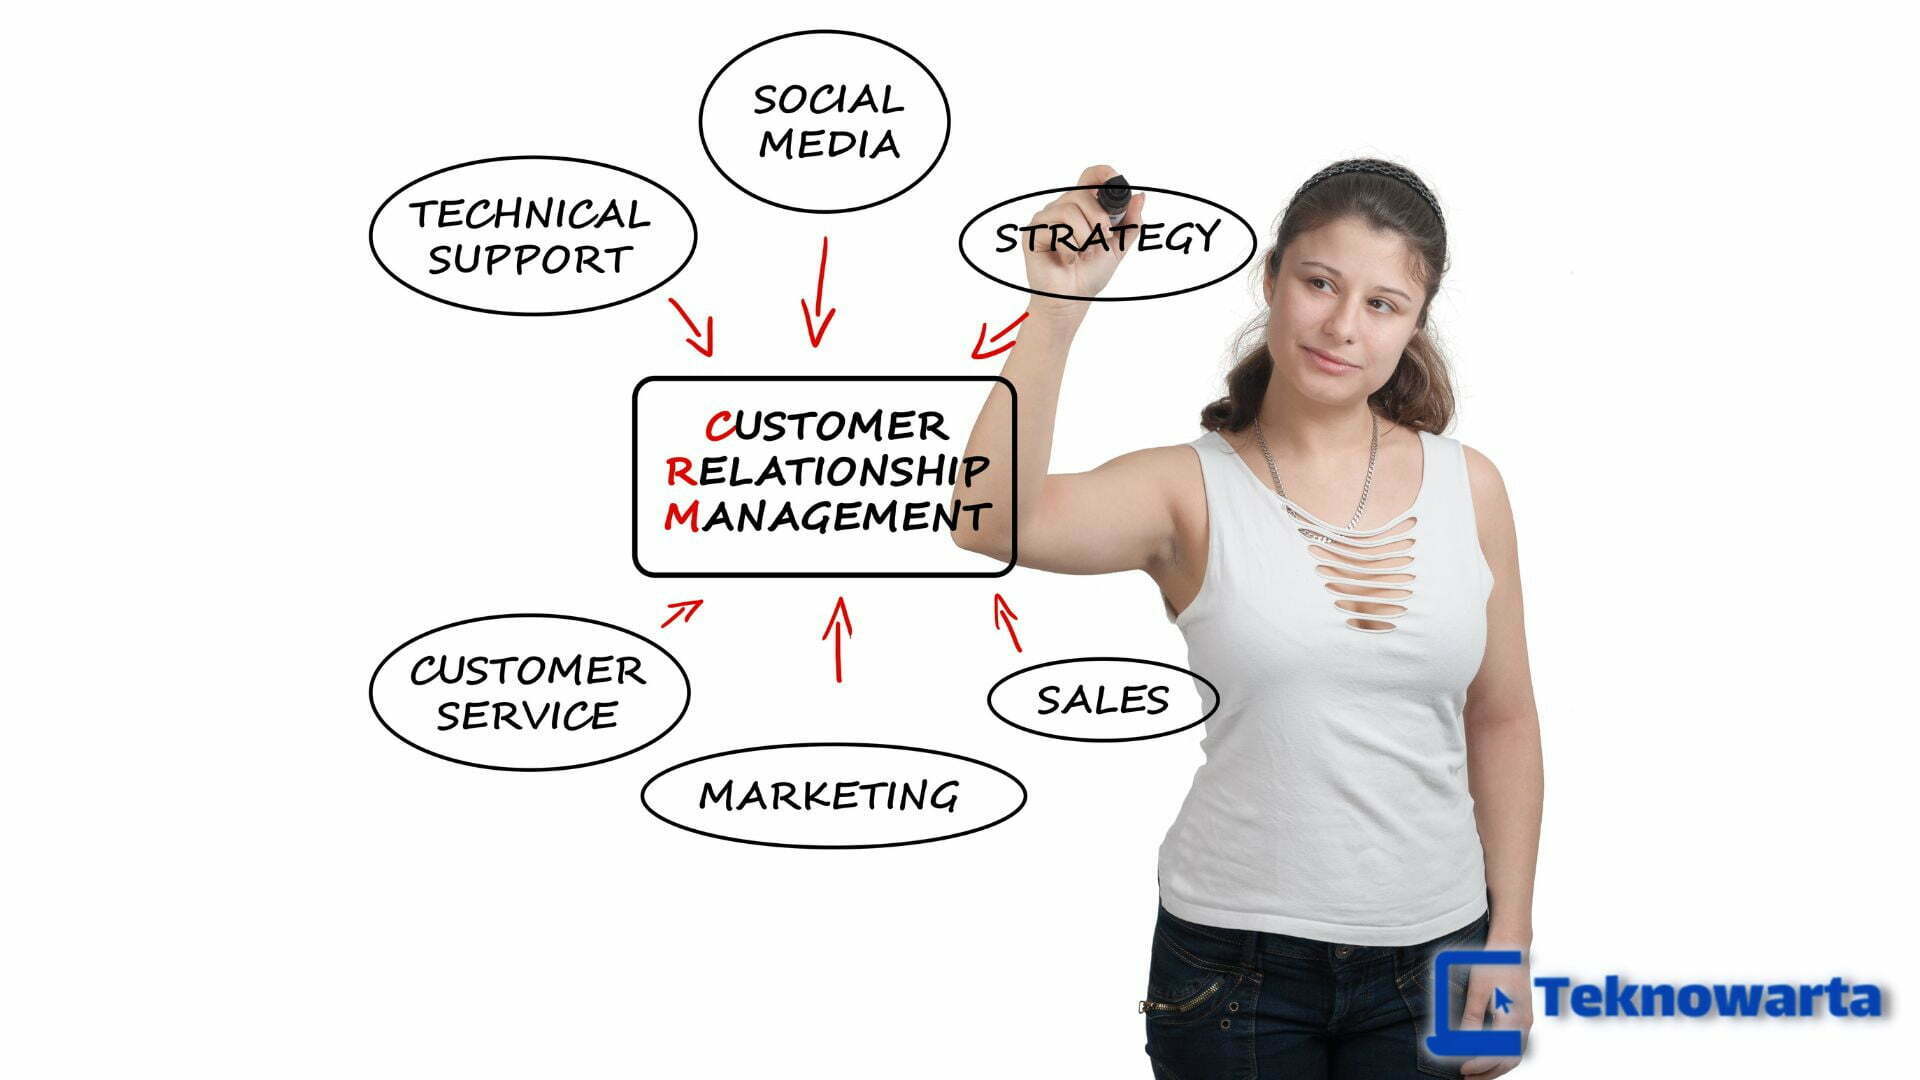 Mengenal Apa itu CRM (Customer Relationship Management)